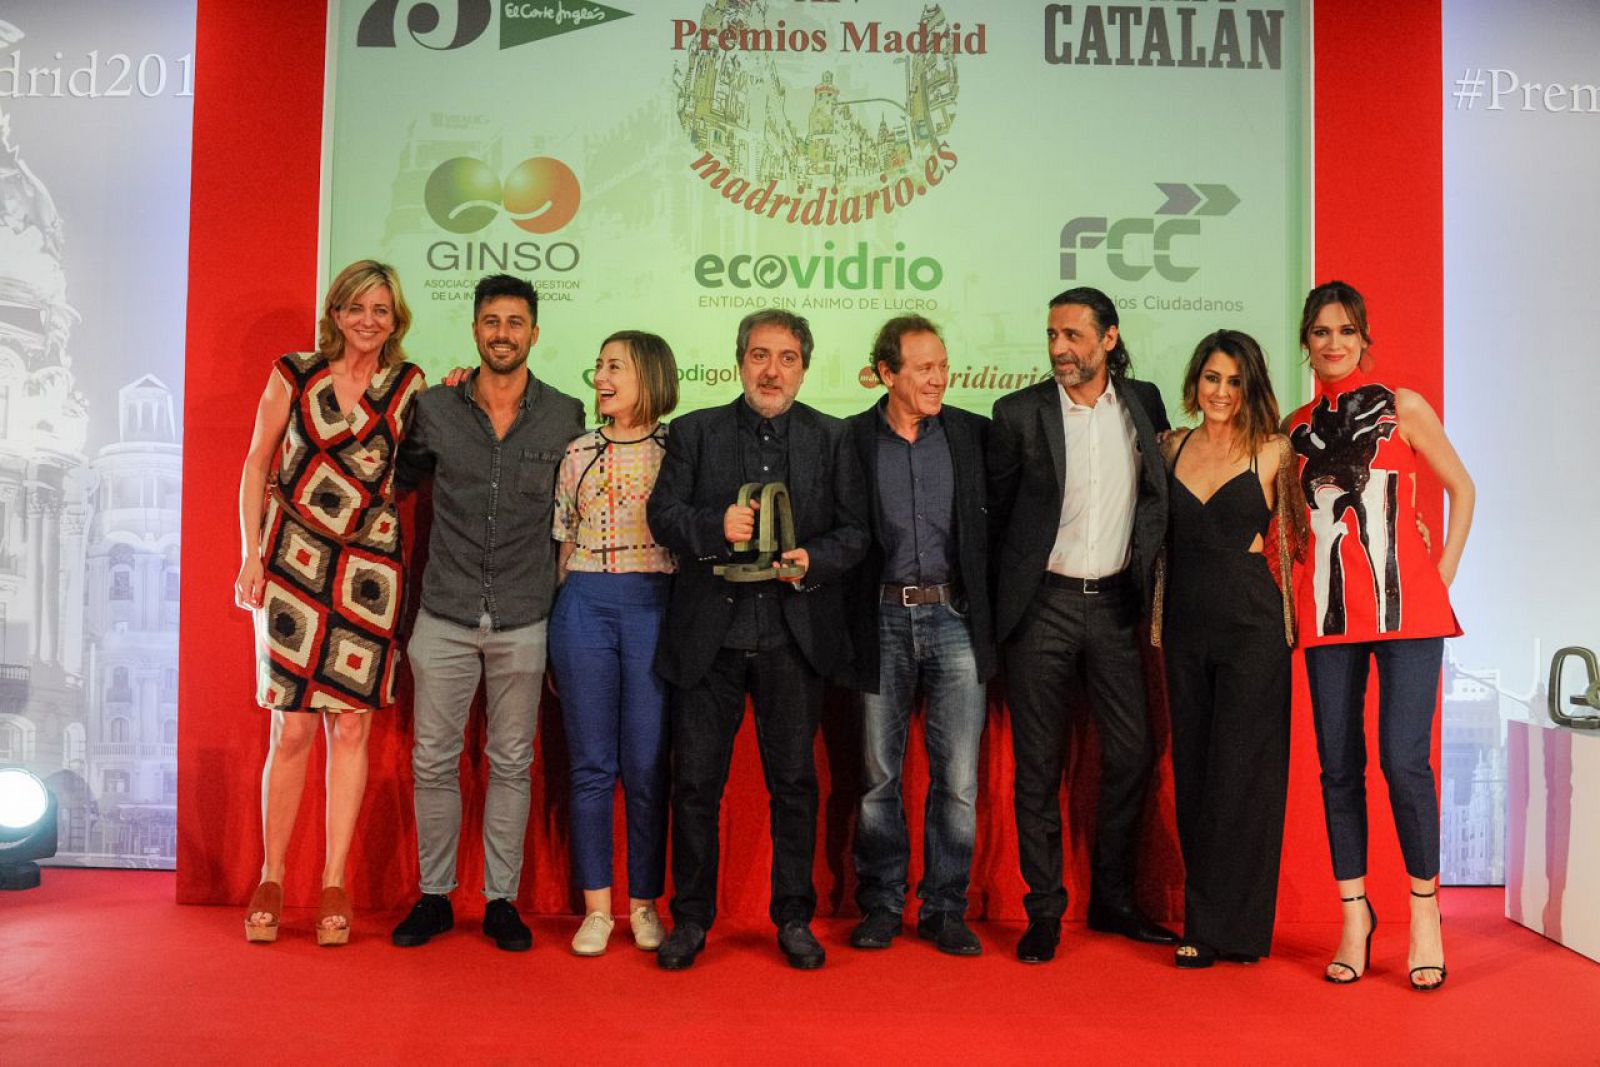 El equipo de El Ministerio del Tiempo recogiendo el Premio Madrid 2016